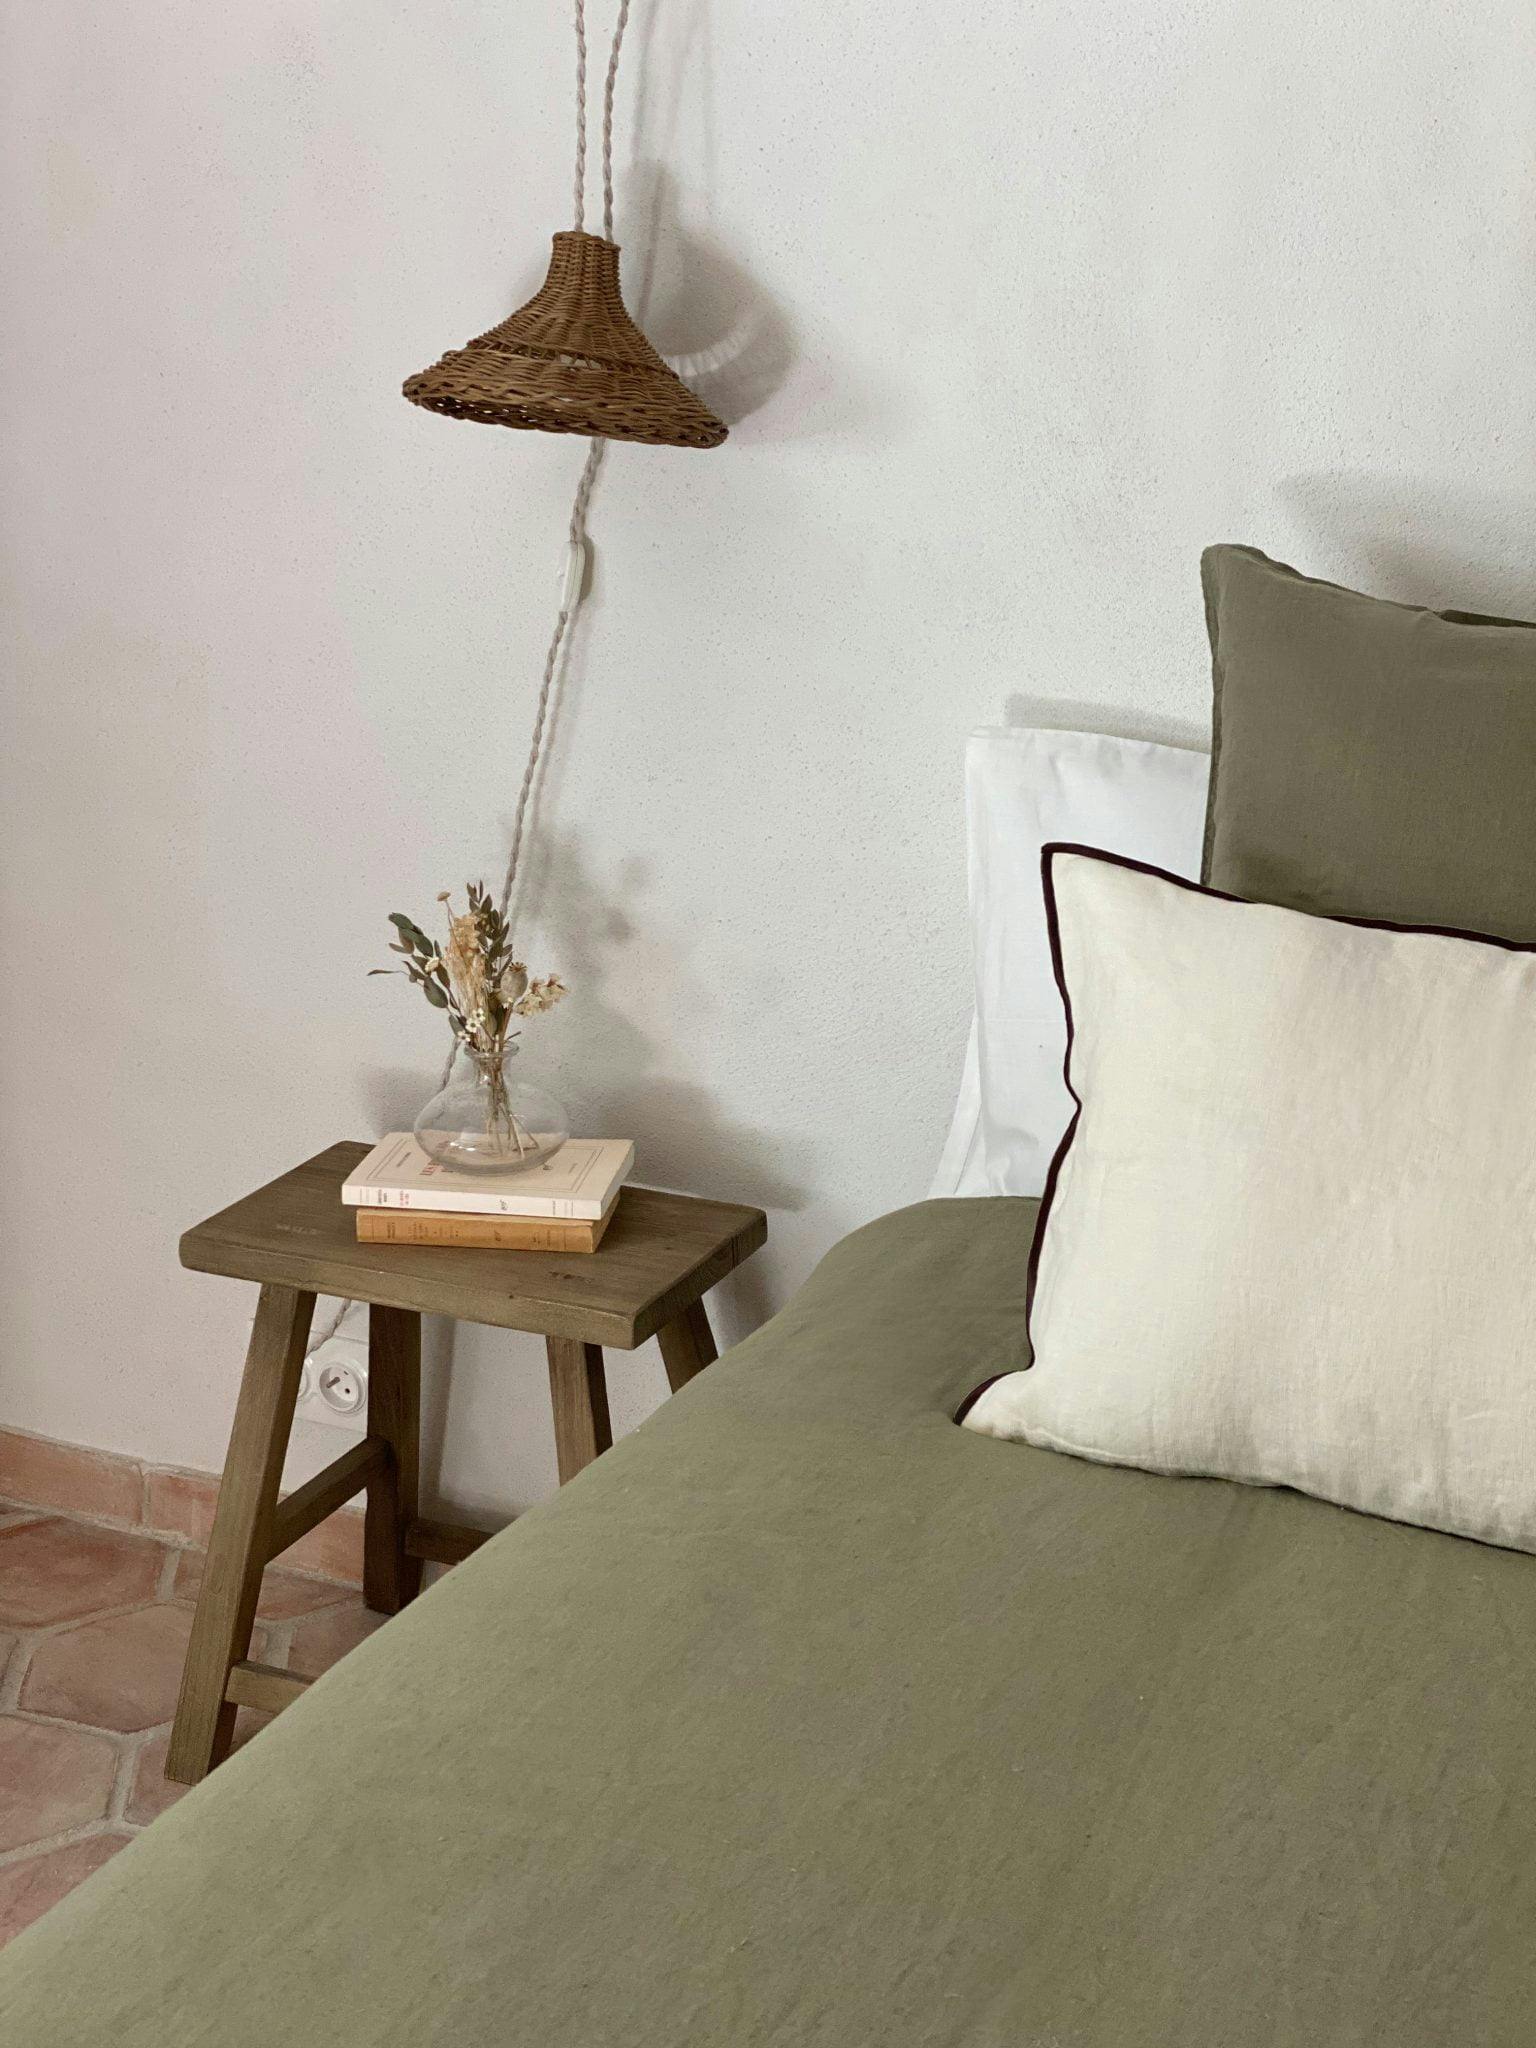 Détail de la table de nuit : tabouret en bois chiné à côté de la tête de lit et ses coussins